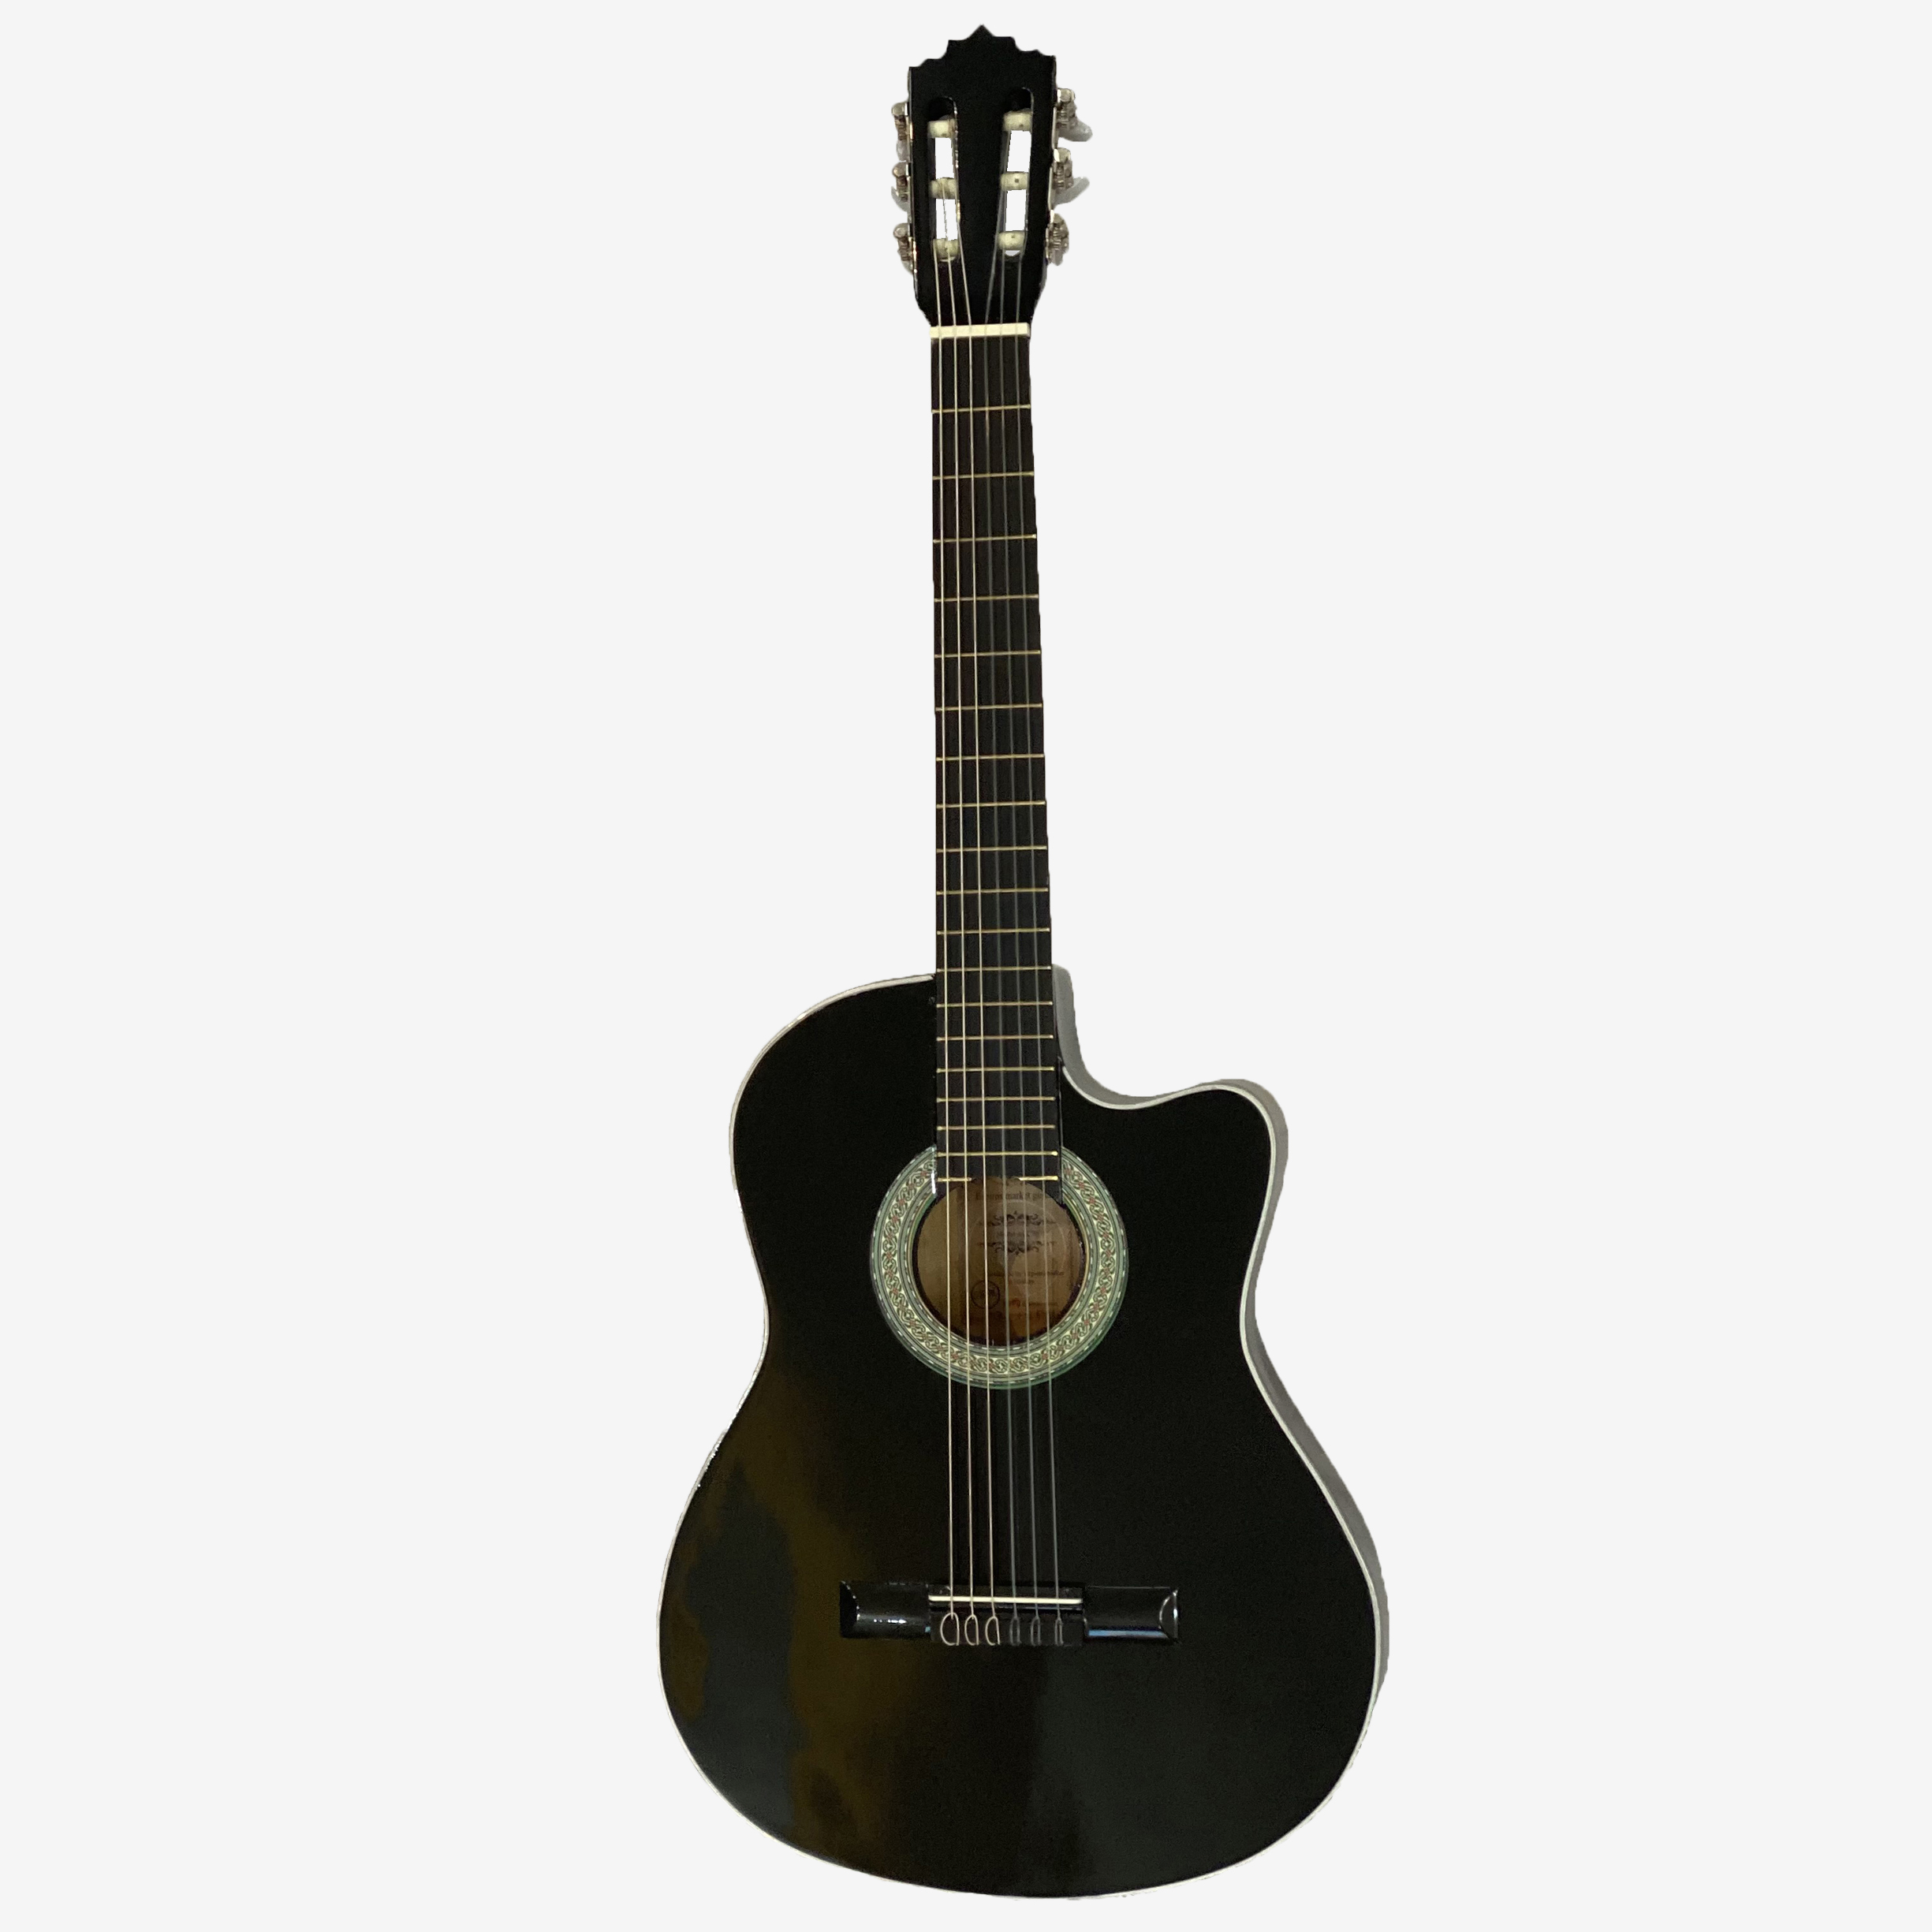 نکته خرید - قیمت روز گیتار پاپ اسپیروس مارکت مدل C.70 خرید